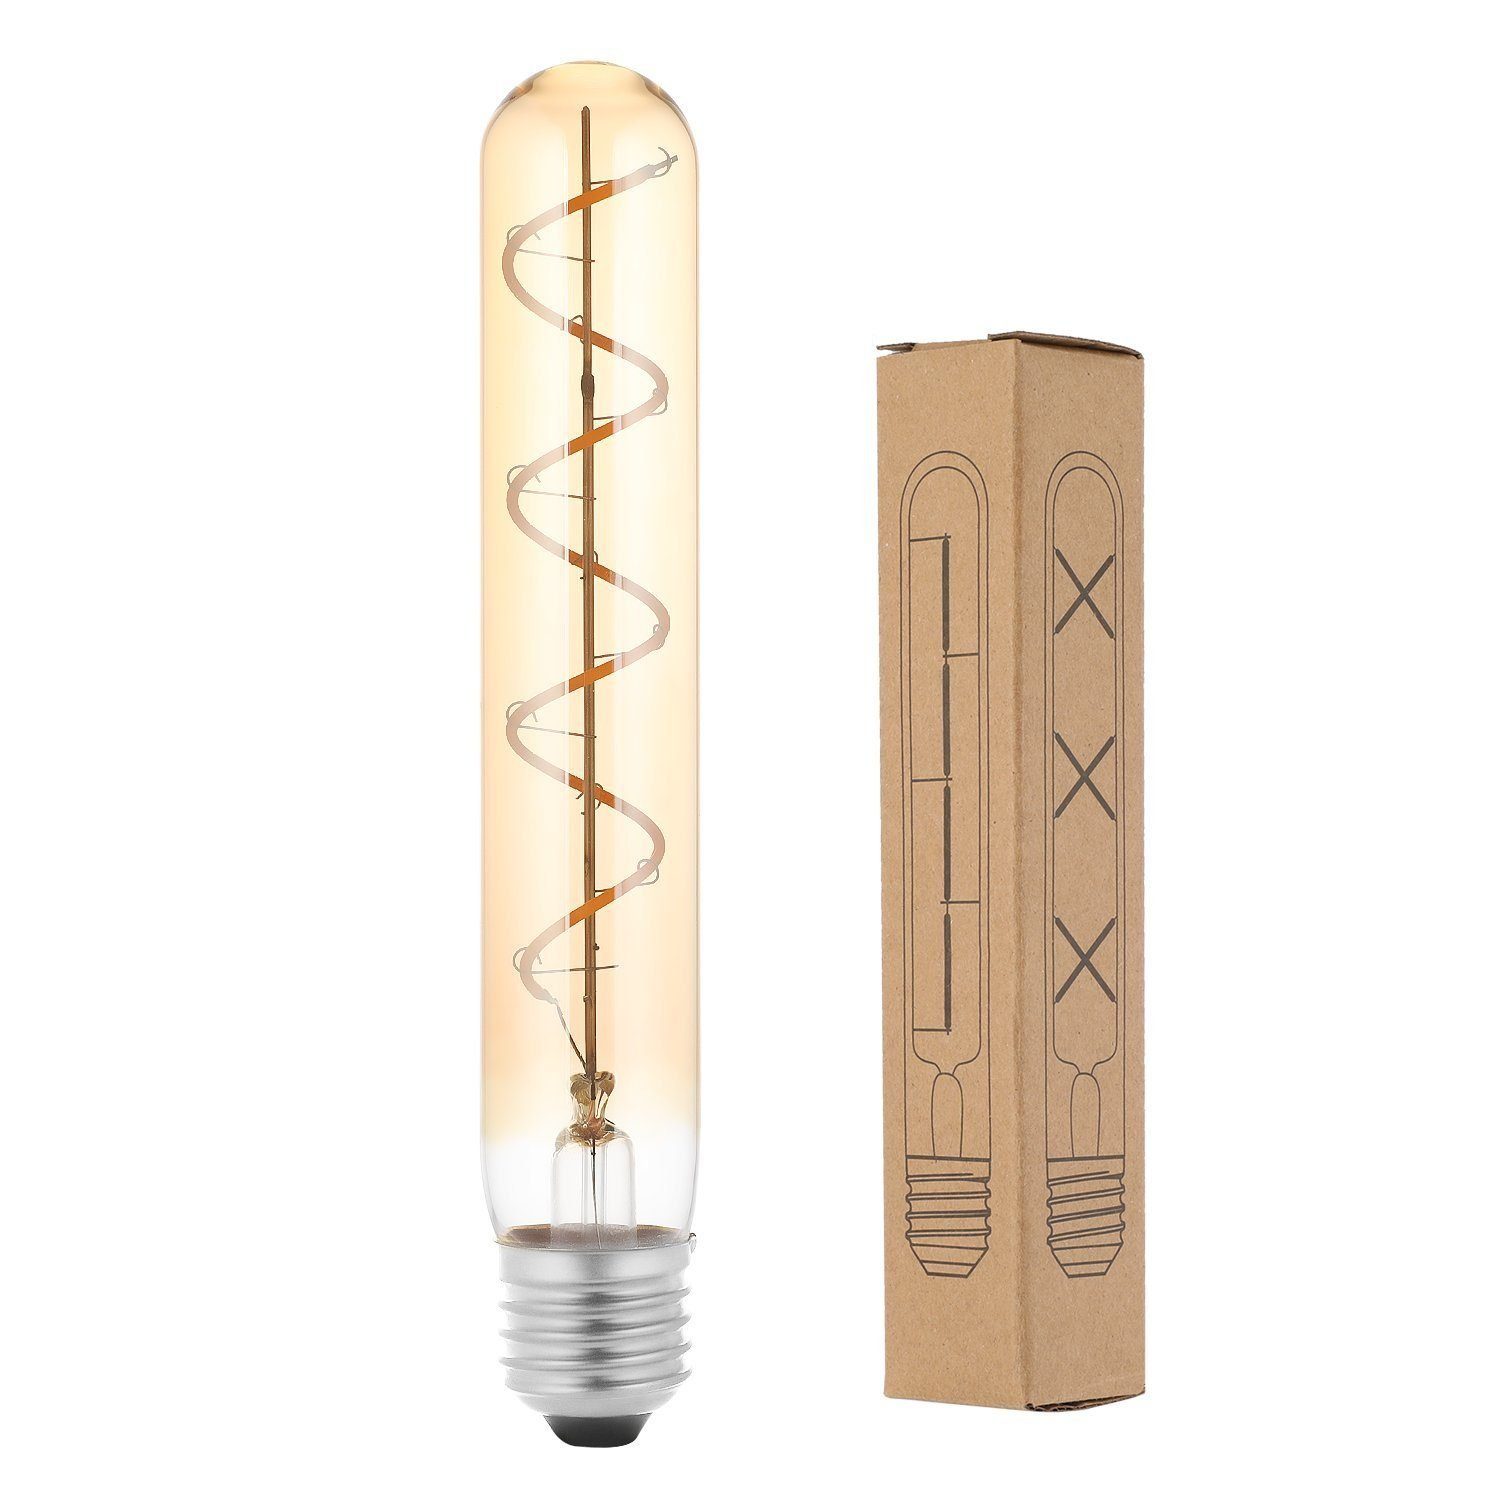 WILGOON Flutlichtstrahler E27 LED Filament Glühbirne Leuchtmittel Vintage Edison Retro Warmweiss, Warmweiß